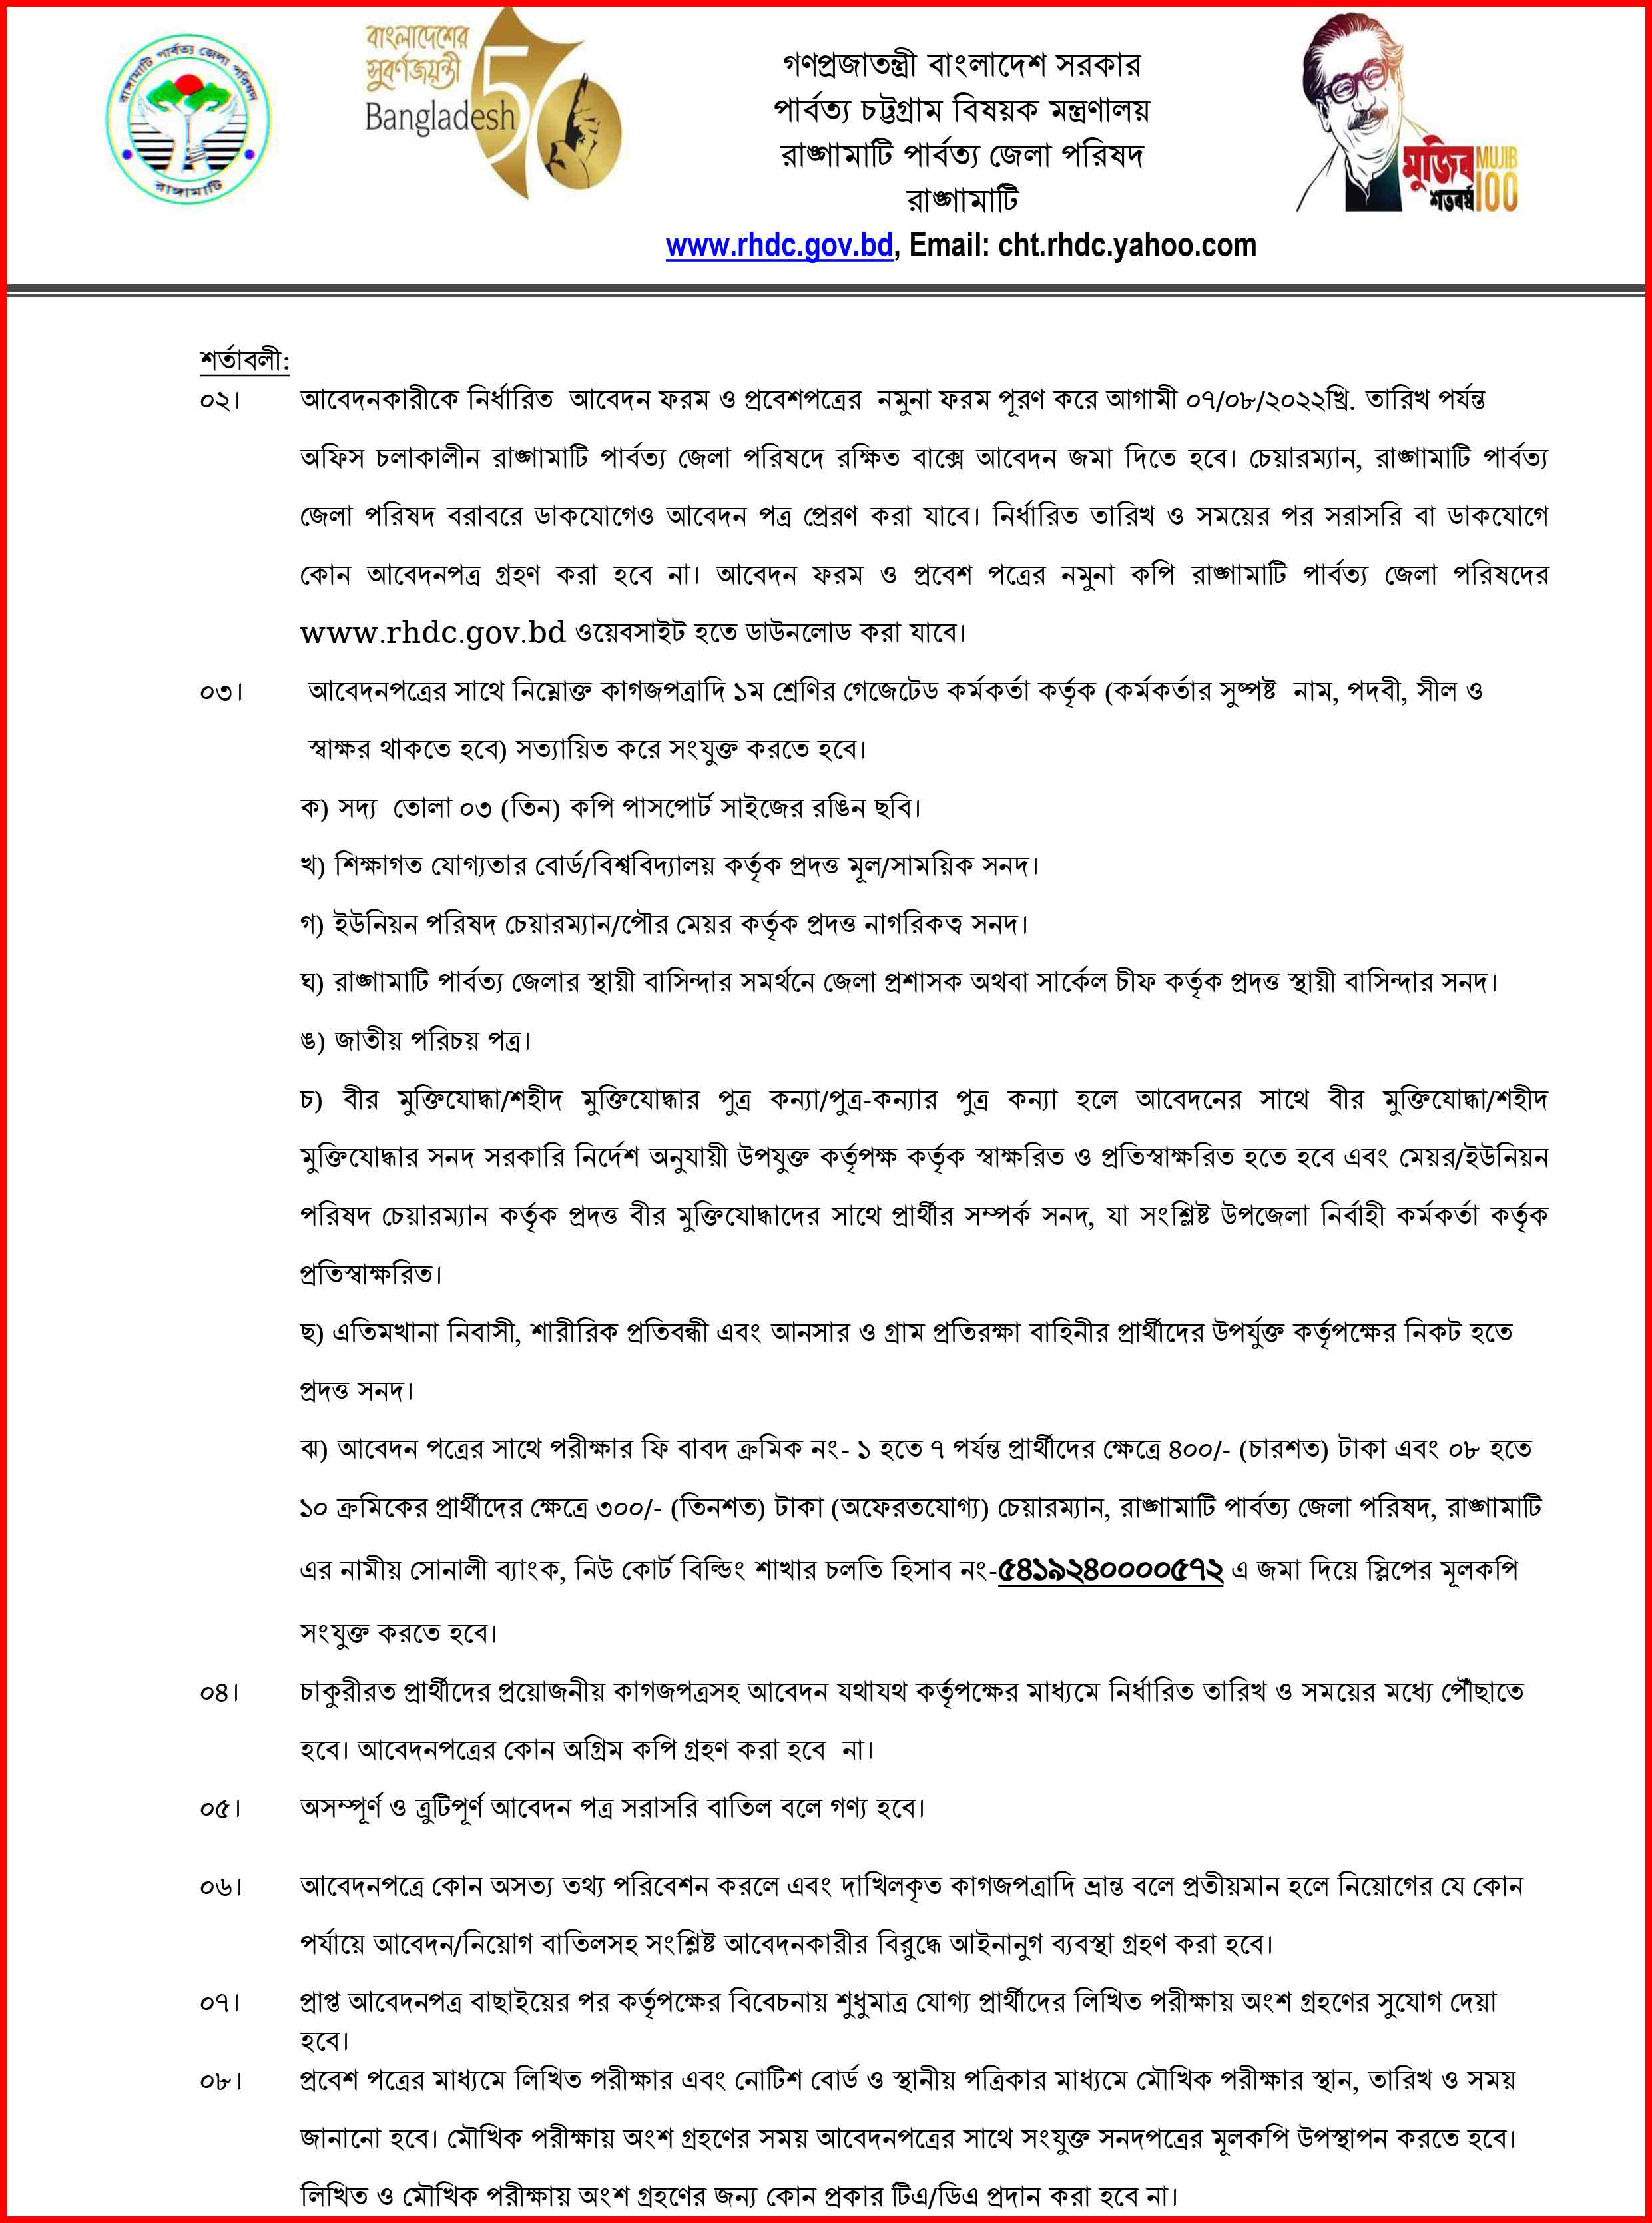 রাঙ্গামাটি পার্বত্য জেলা পরিষদ নতুন নিয়োগ বিজ্ঞপ্তি ২০২২ । Rangamati Hill District Council New Recruitment Circular 2022.